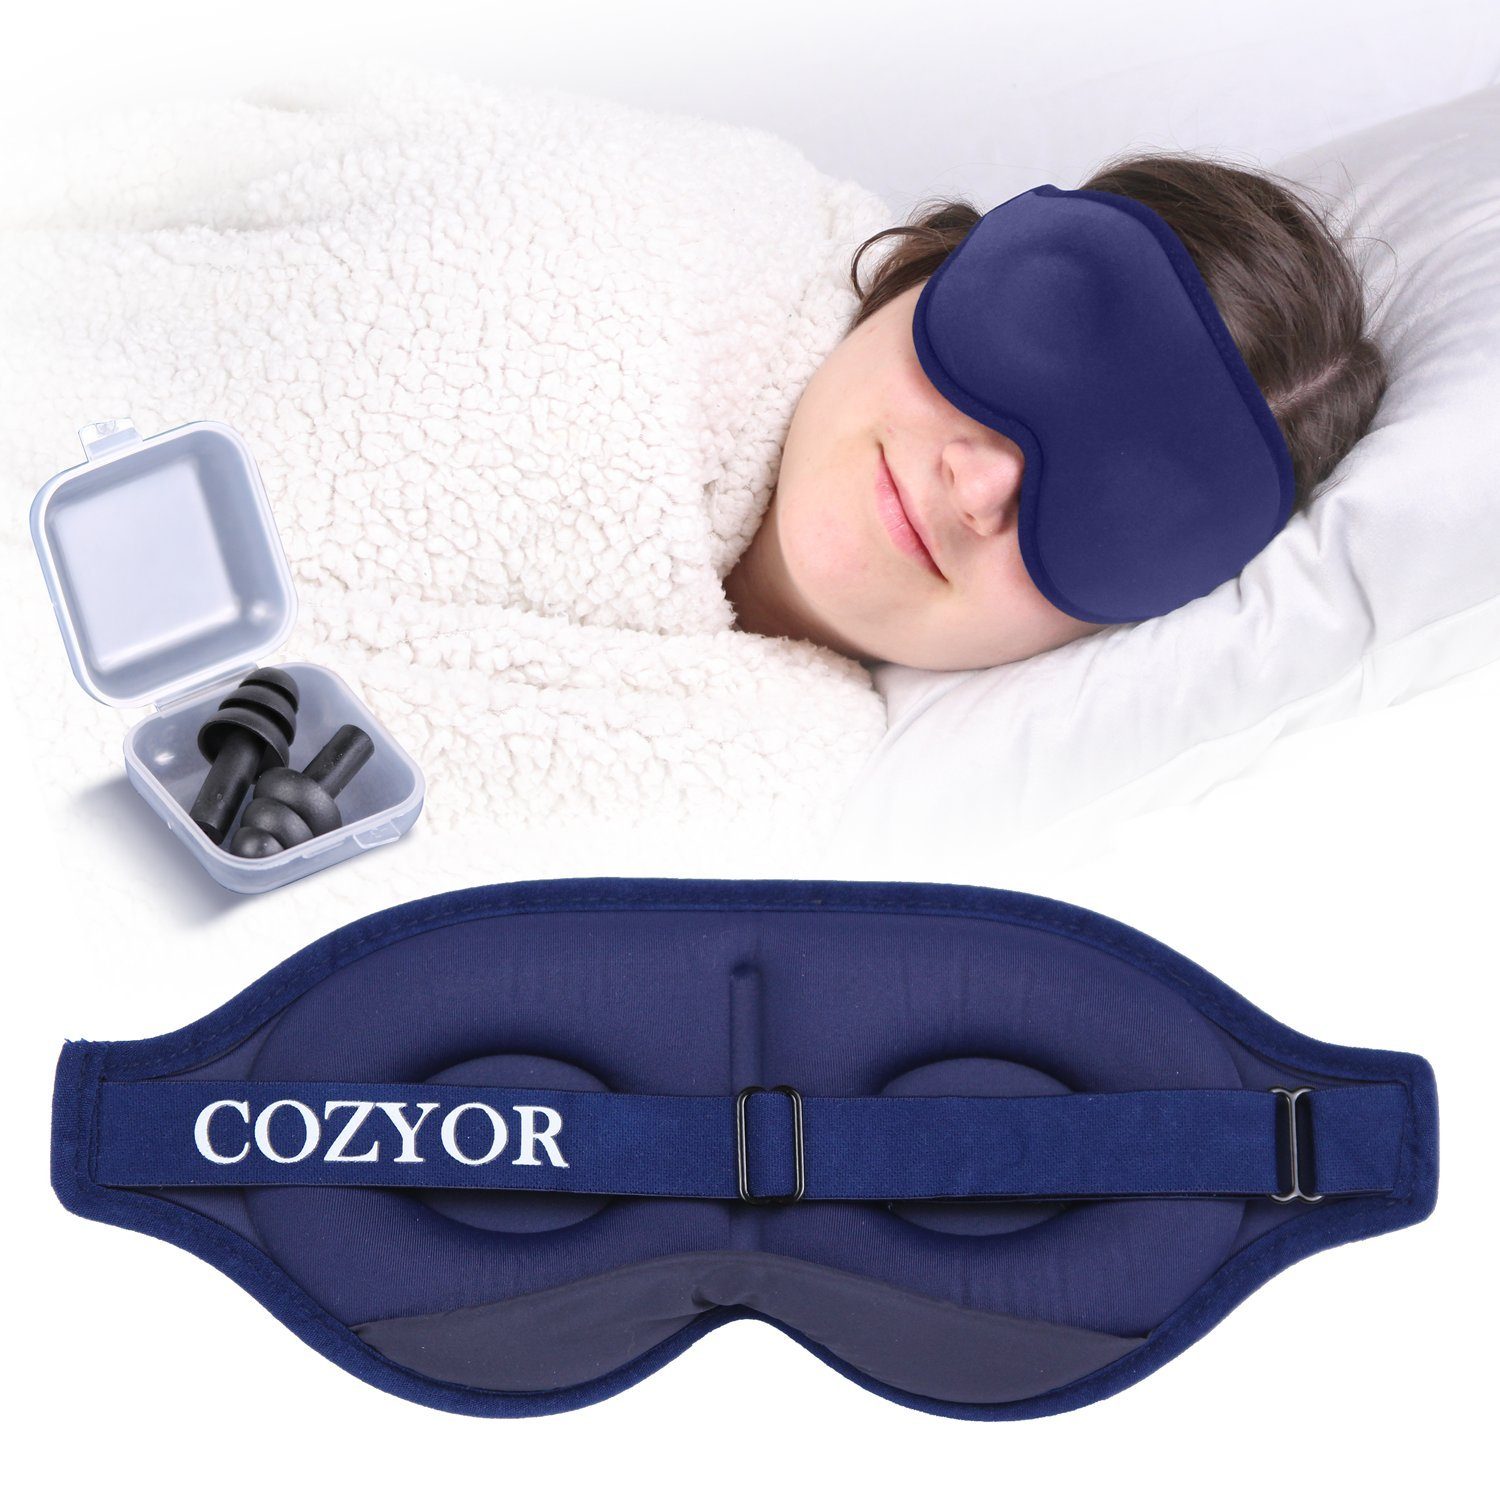 Cozyor Schlafmaske 100% Blackout-Effekt 3D Augenmaske mit ergonomischem Design, Reiseset klein & kompakt, blau Ocean, 2-tlg., Schlafmaske mit wiederverwendbaren Ohrstöpseln, extra Polsterung und variable Passform